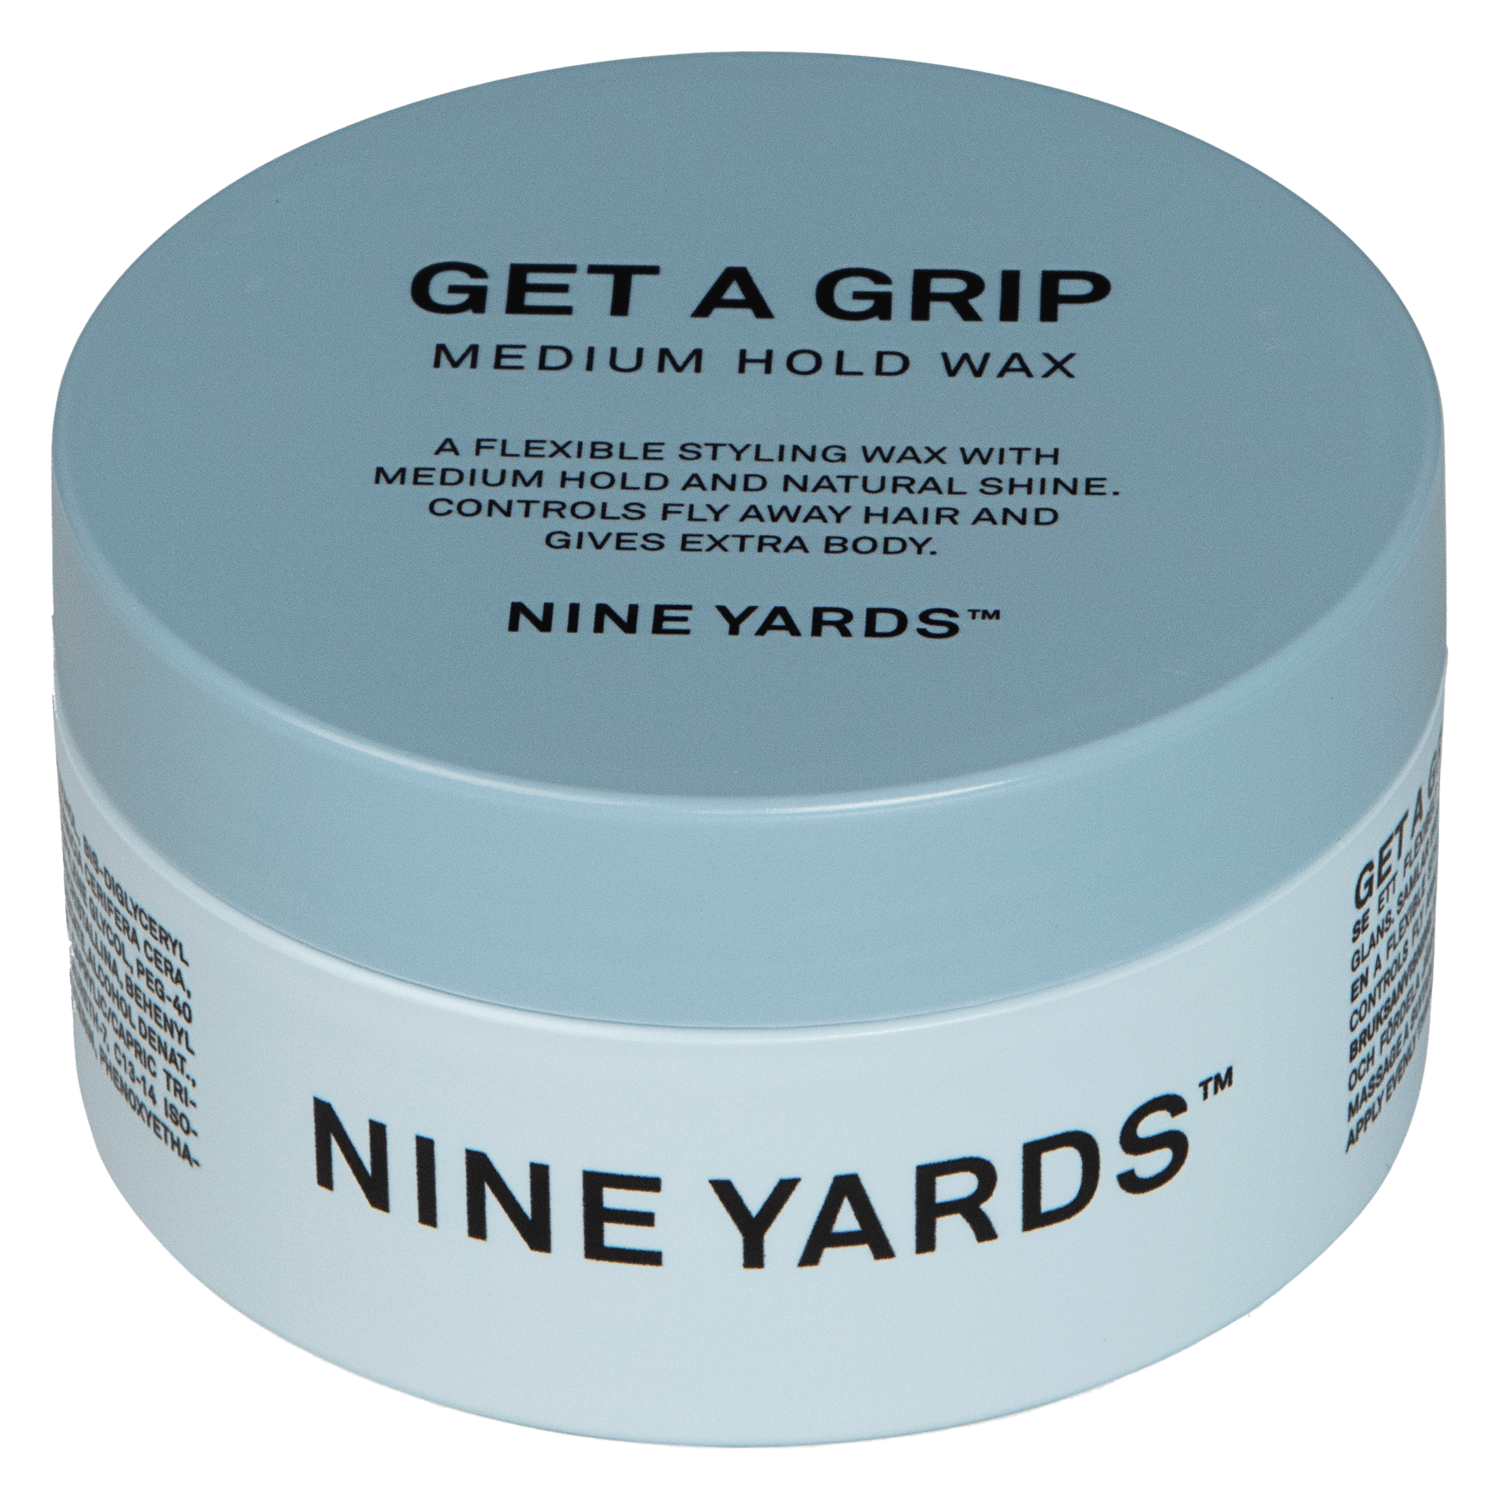 Produktbild von Nine Yards - Get A Grip Medium Hold Wax